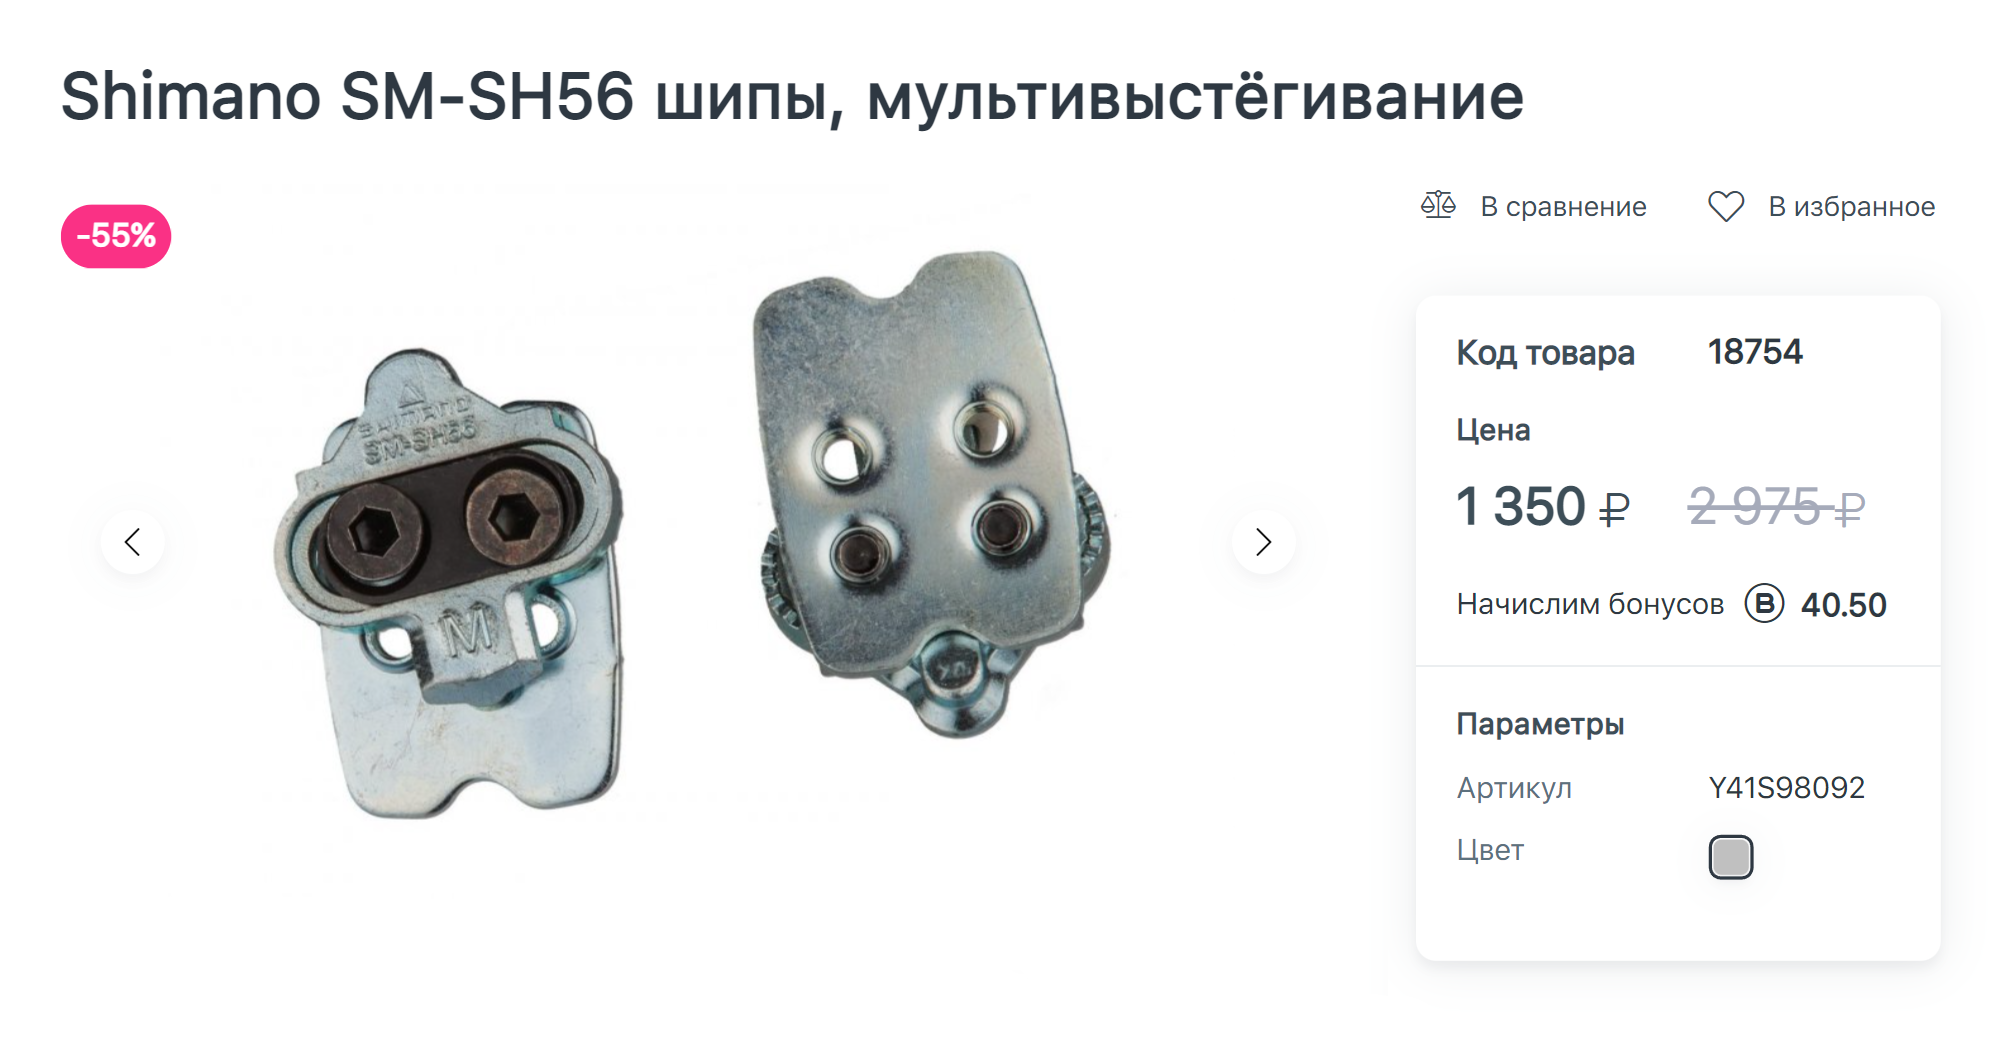 Новые шипы Shimano в интернет-магазине стоят 1350 ₽, но я купила б/у подешевле. Источник: pro⁠-⁠bike.ru